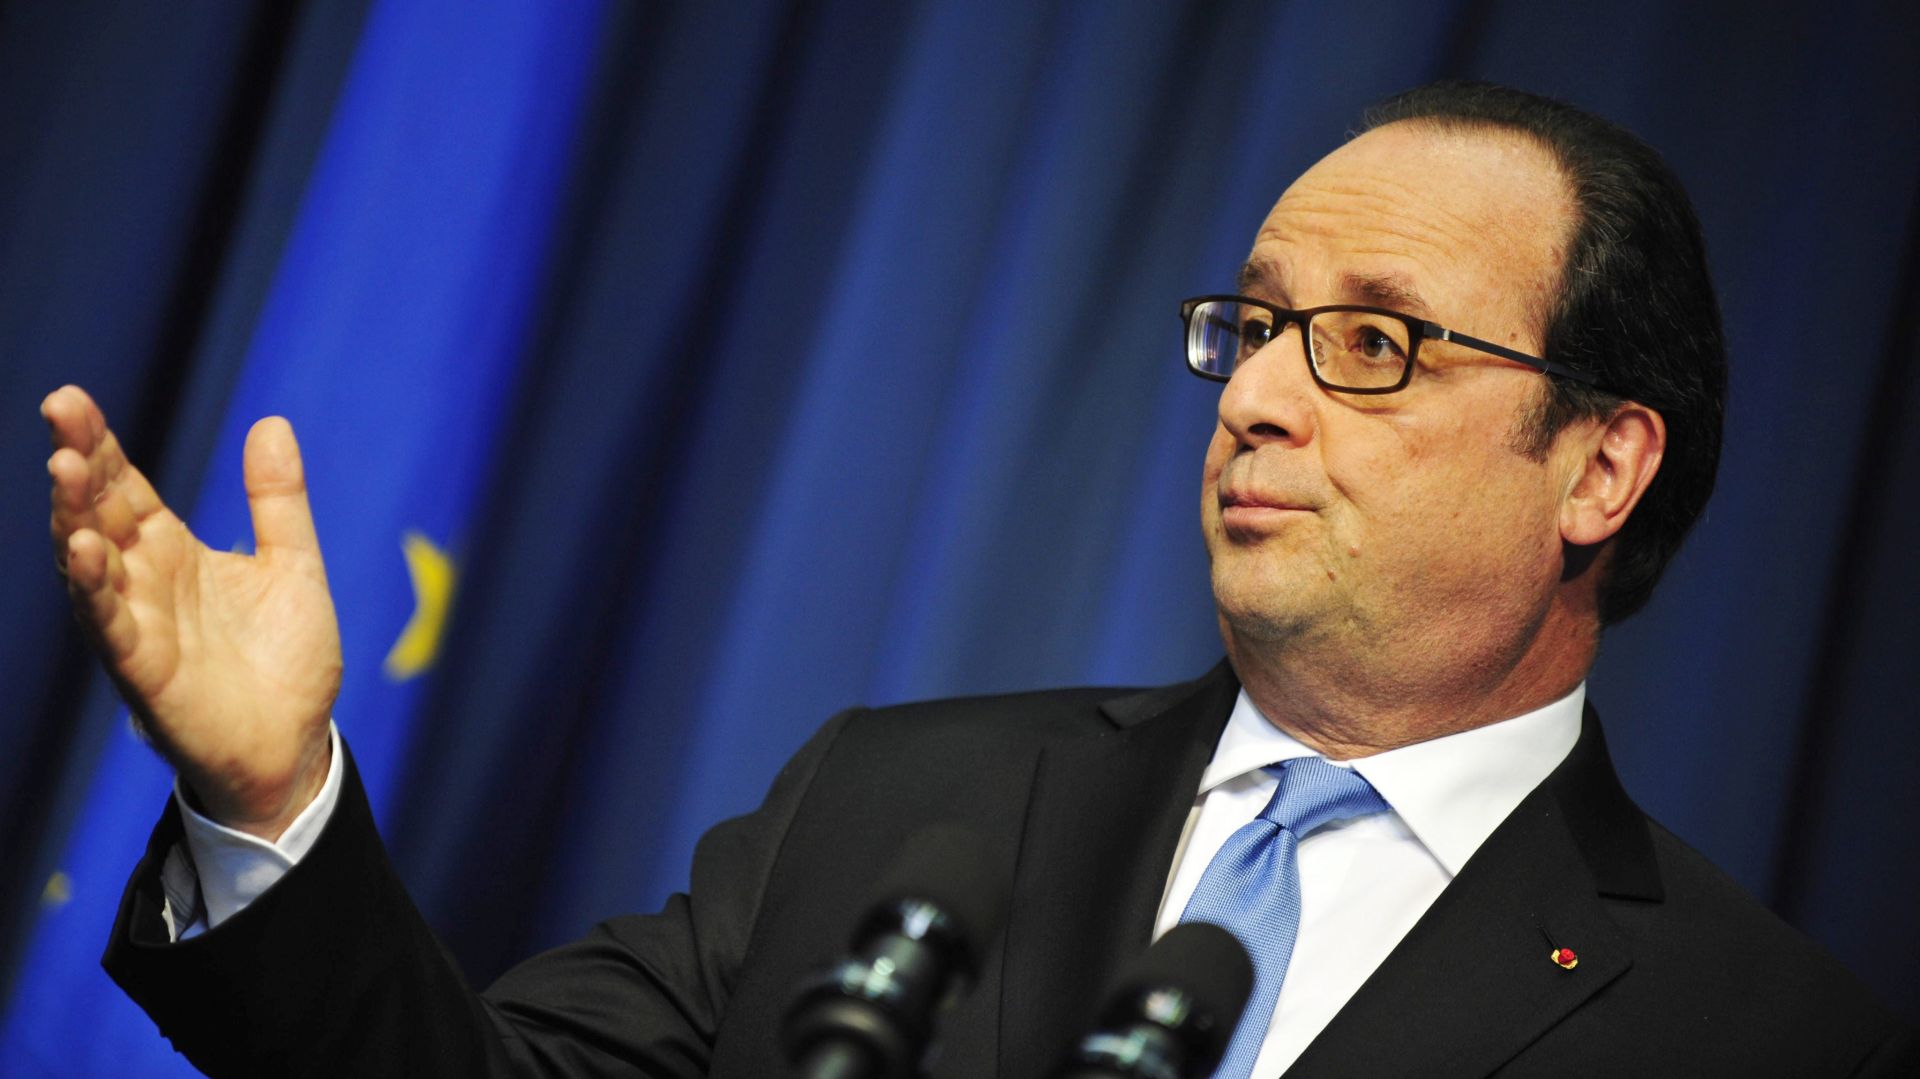 UKRAJINA Hollande pozvao na izbjegavanje eskalacije sukoba